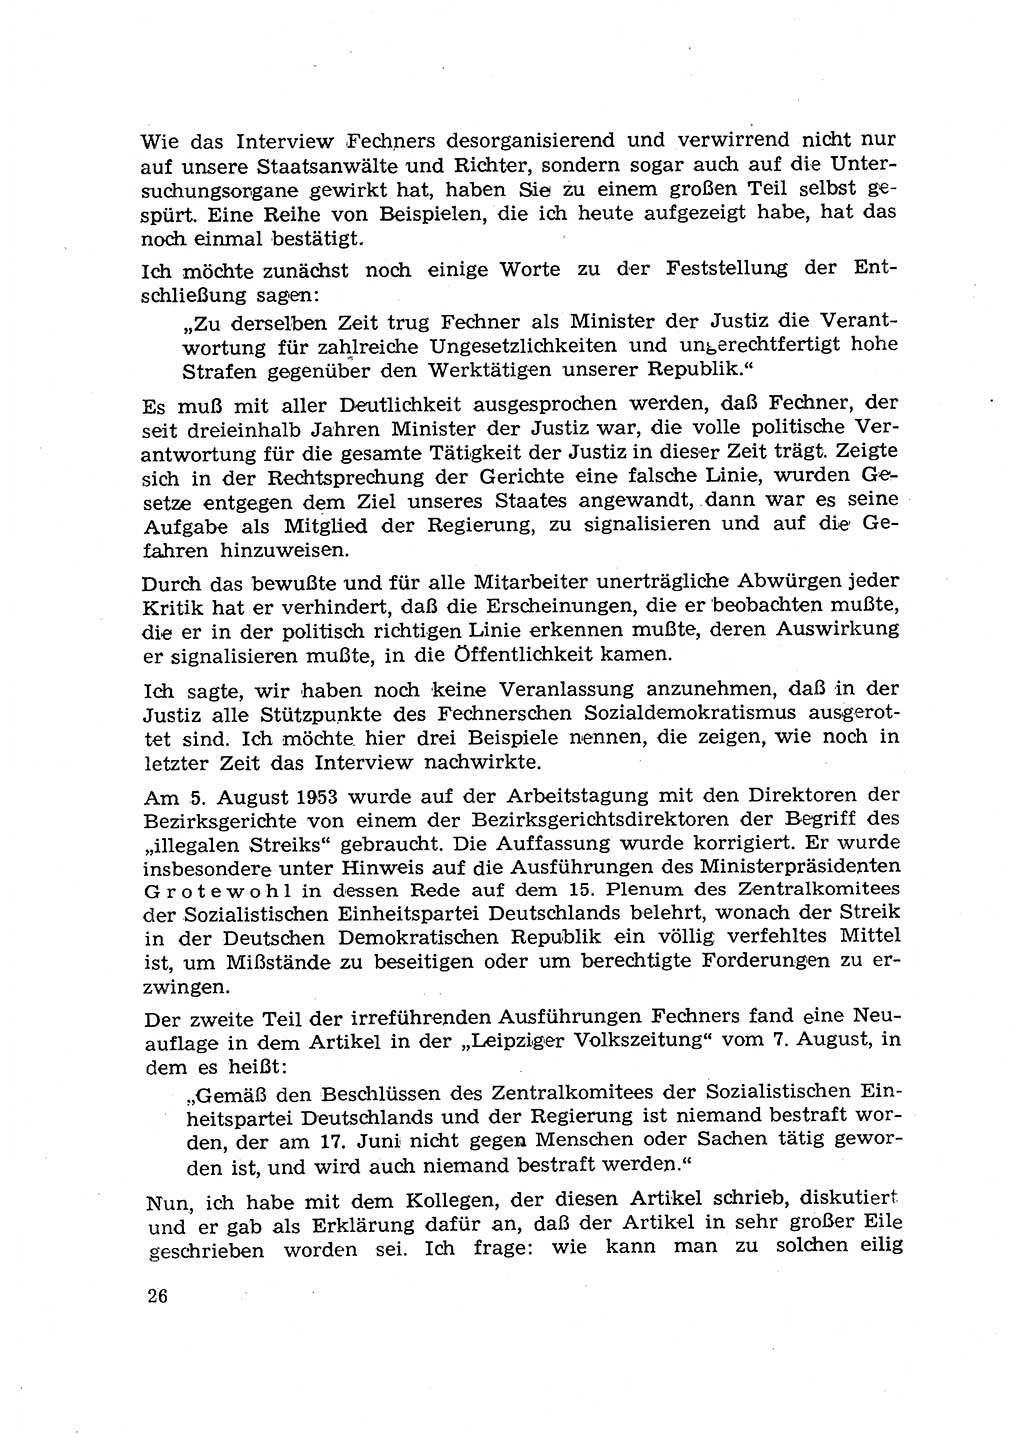 Hauptaufgaben der Justiz [Deutsche Demokratische Republik (DDR)] bei der Durchführung des neuen Kurses 1953, Seite 26 (Hpt.-Aufg. J. DDR 1953, S. 26)